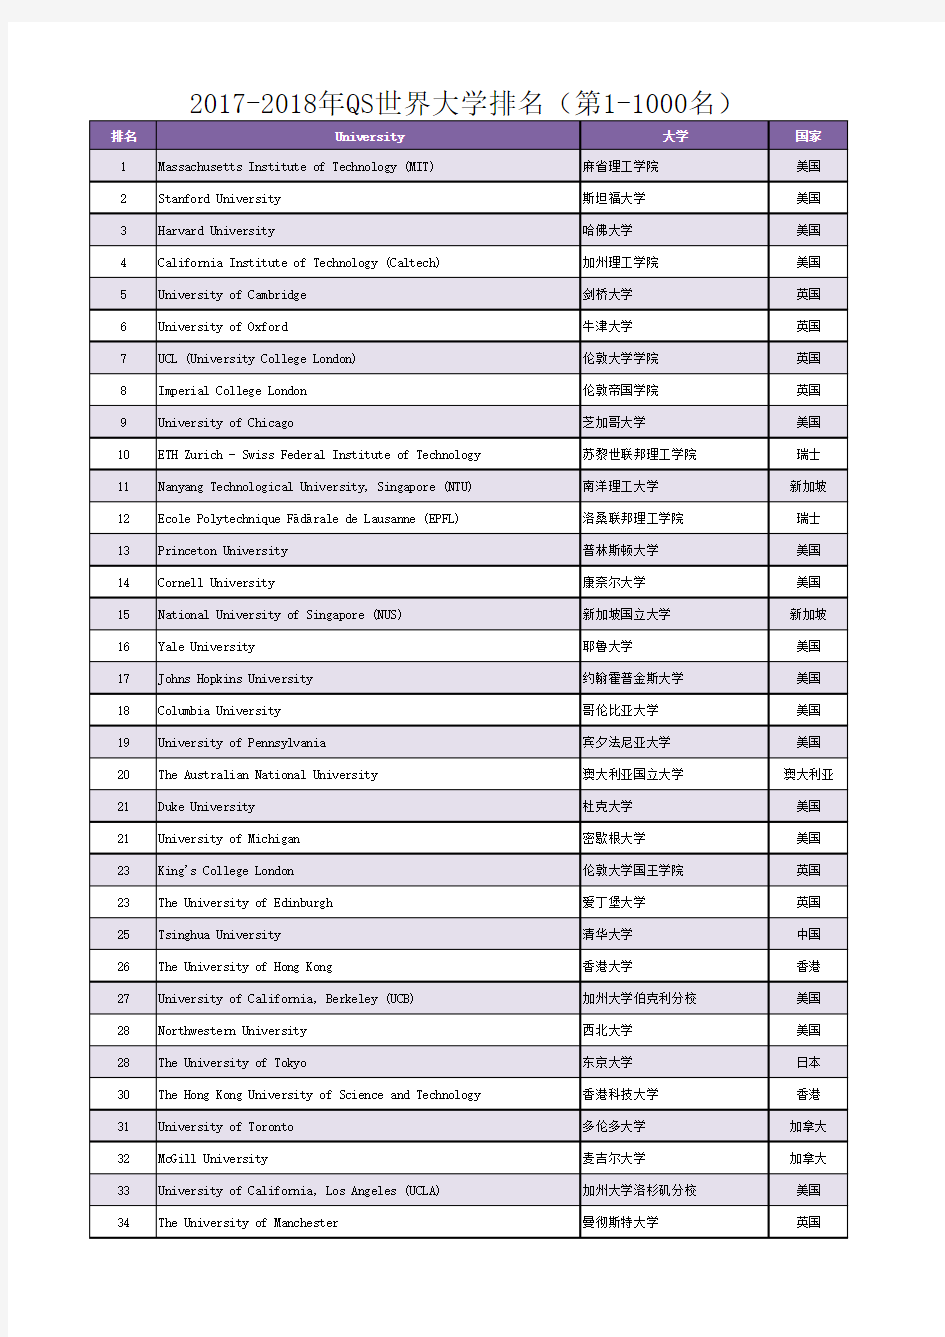 2017-2018年QS世界大学排名(第1-1000名)